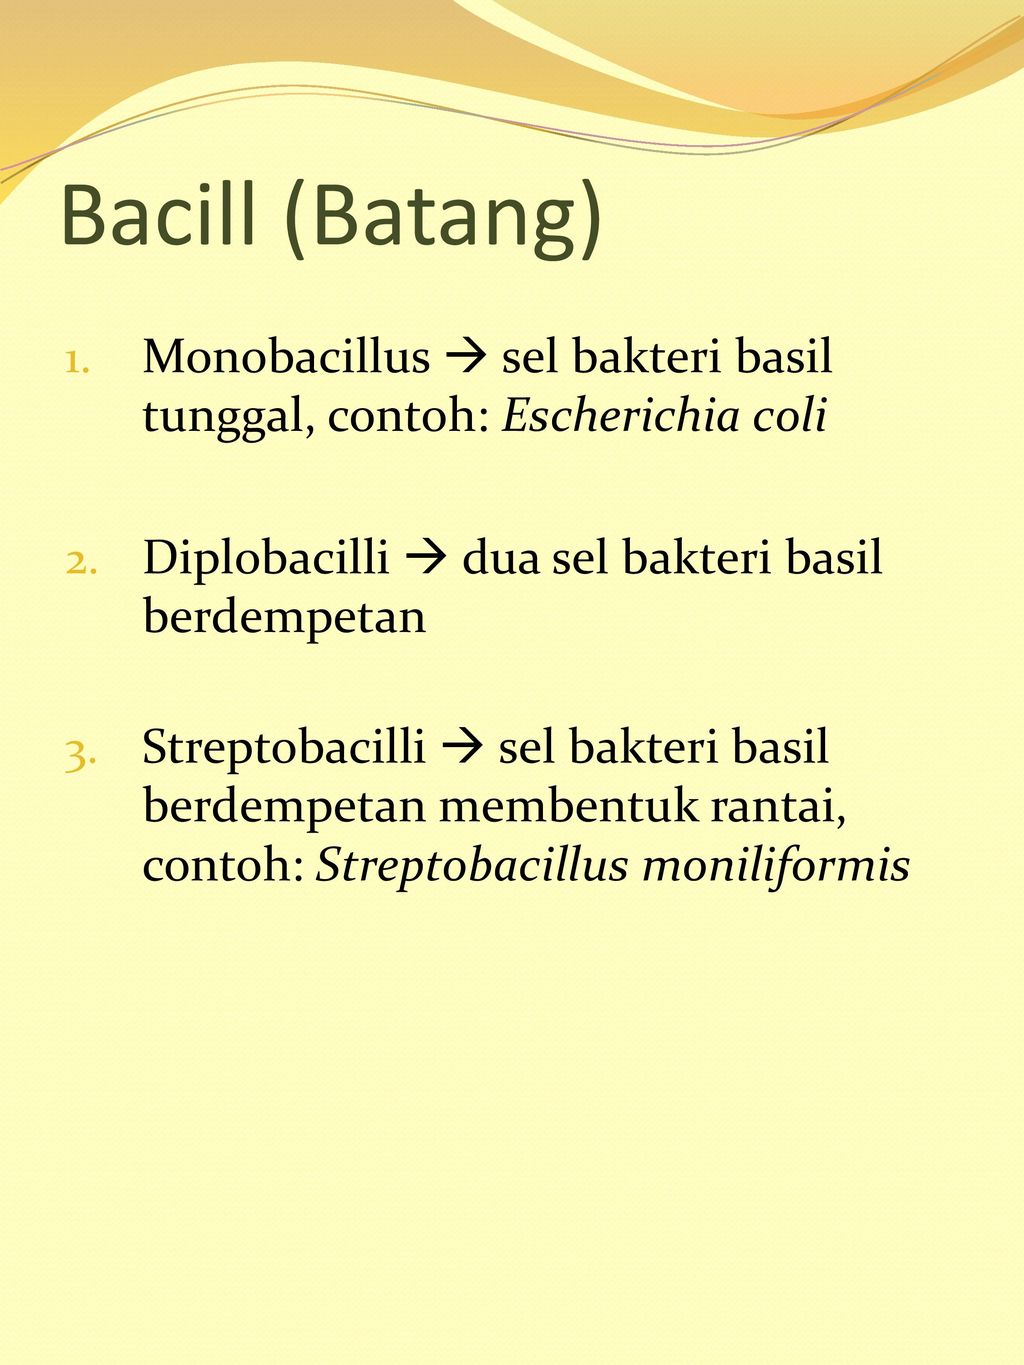 Bacill (Batang) Monobacillus  sel bakteri basil tunggal, contoh: Escherichia coli. Diplobacilli  dua sel bakteri basil berdempetan.